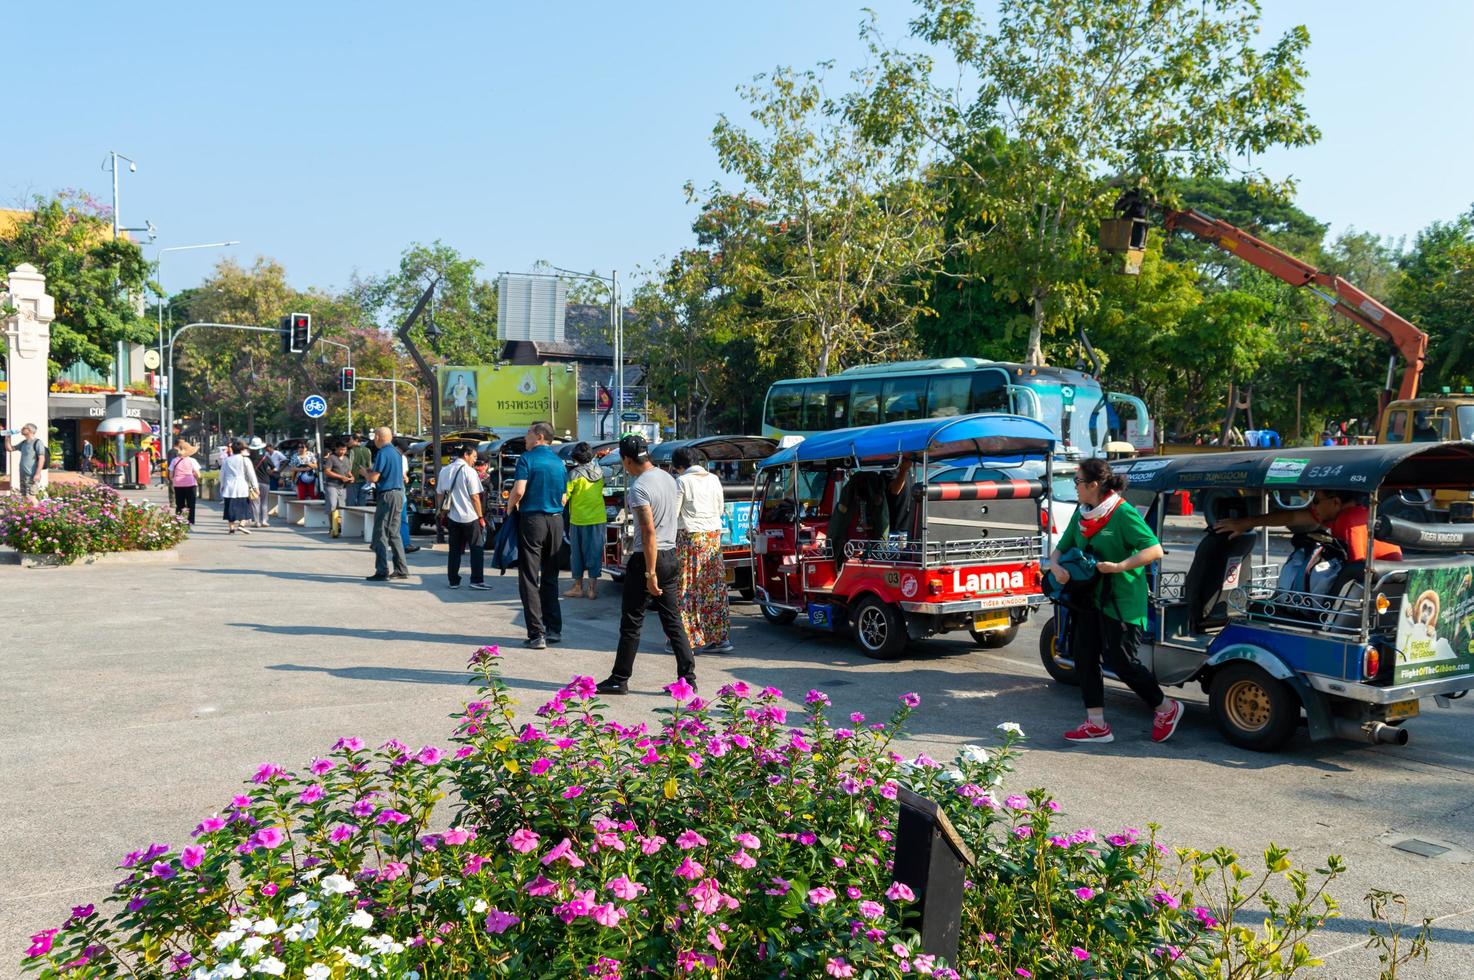 chiang mai thailande10 janvier 2020un groupe de touristes qui prennent une voiture tuktuk descend du bus pour voyager à chiang mai. Les tuktuks car sont disponibles dans de nombreuses destinations en Thaïlande. photo